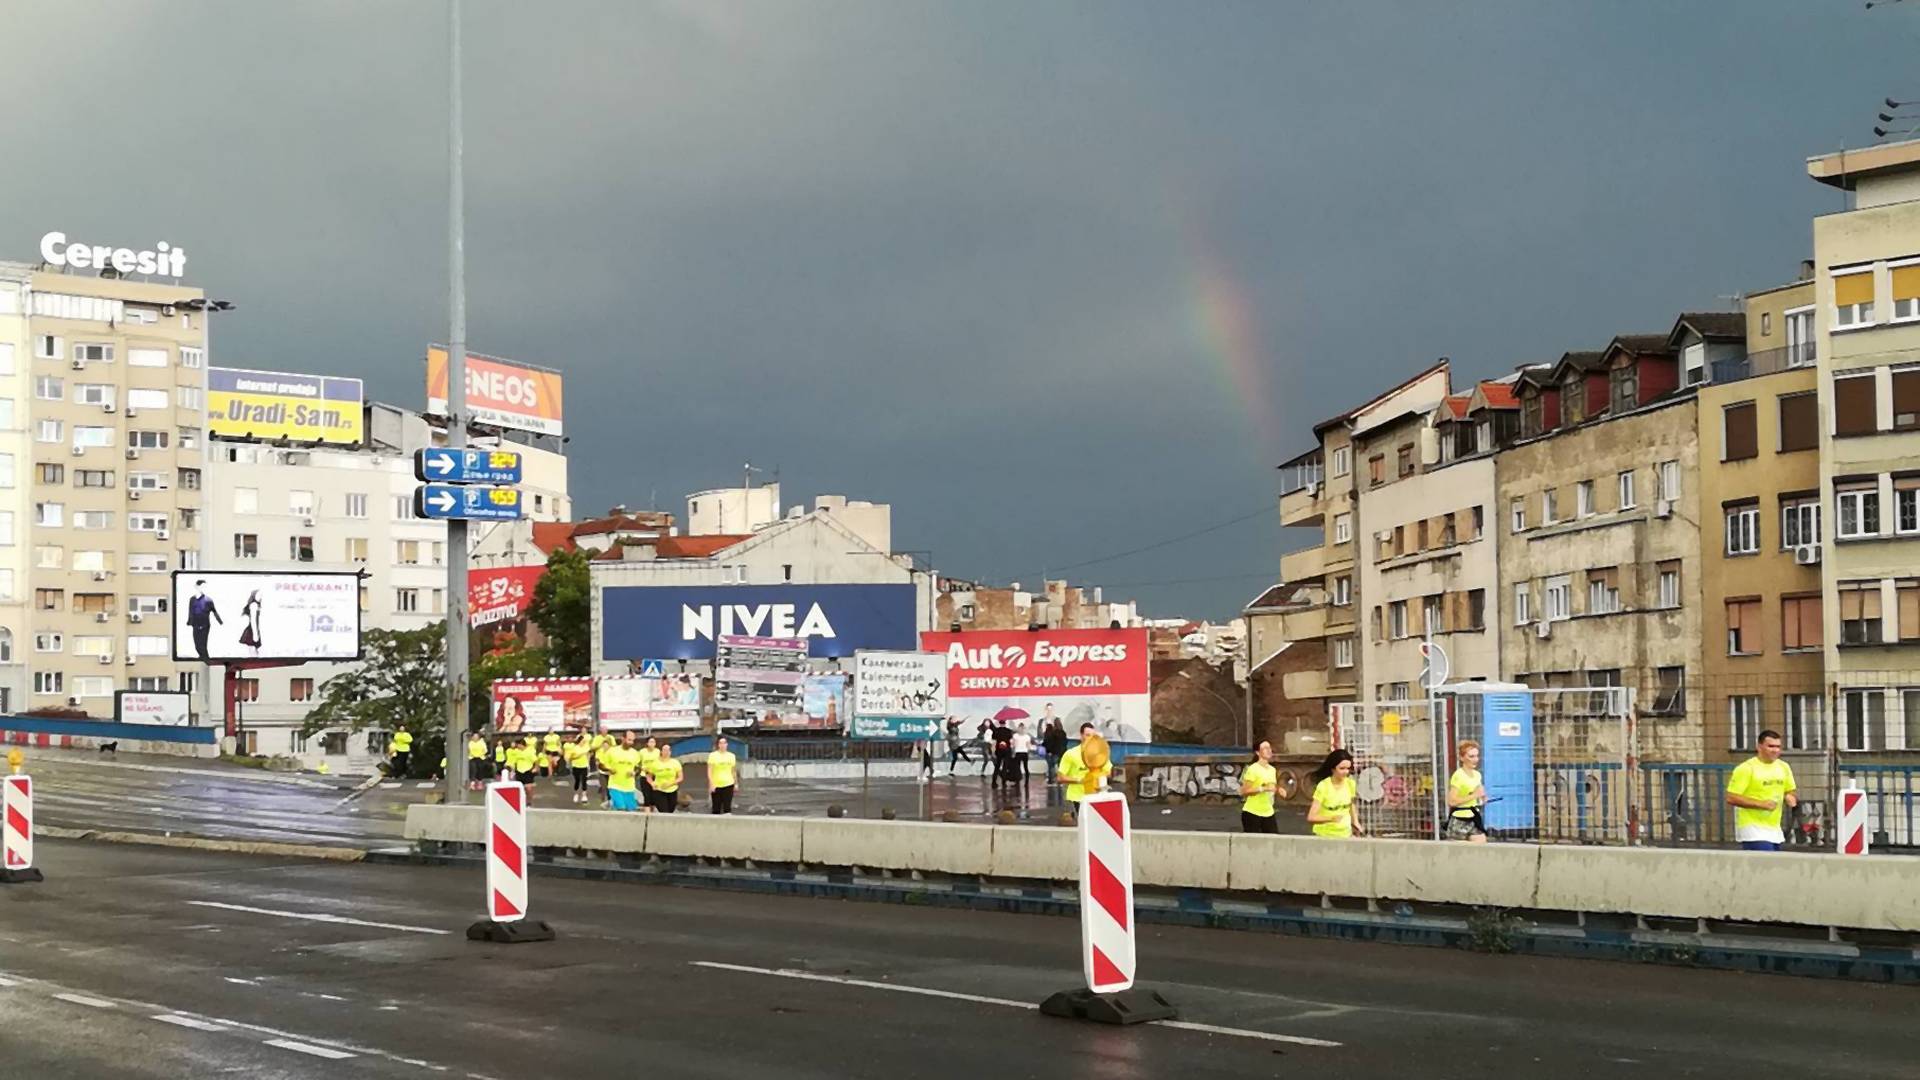 Nakon Parade i kiše, i trka paralisala Beograd